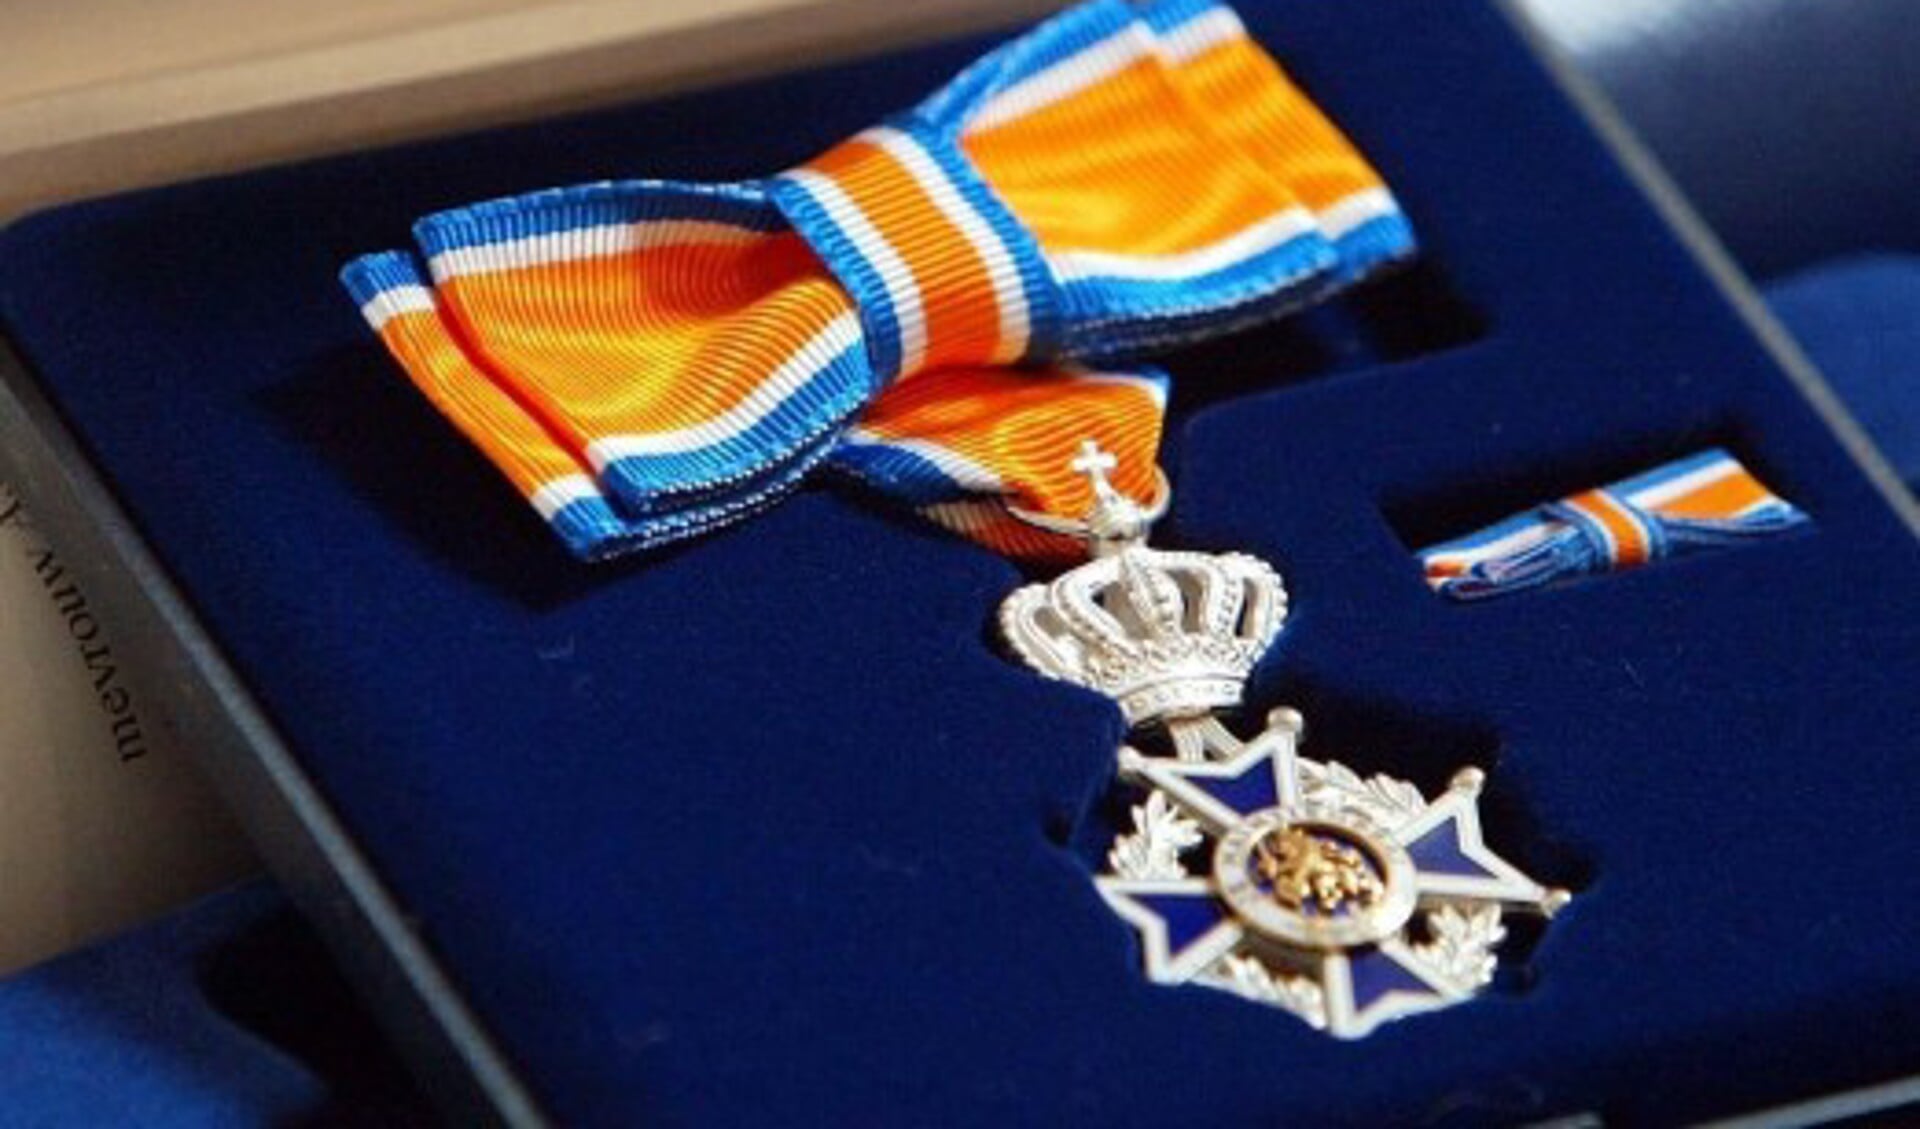  Vandaag is de heer Martin van den Hanenberg benoemd tot Lid in de Orde van Oranje Nassau